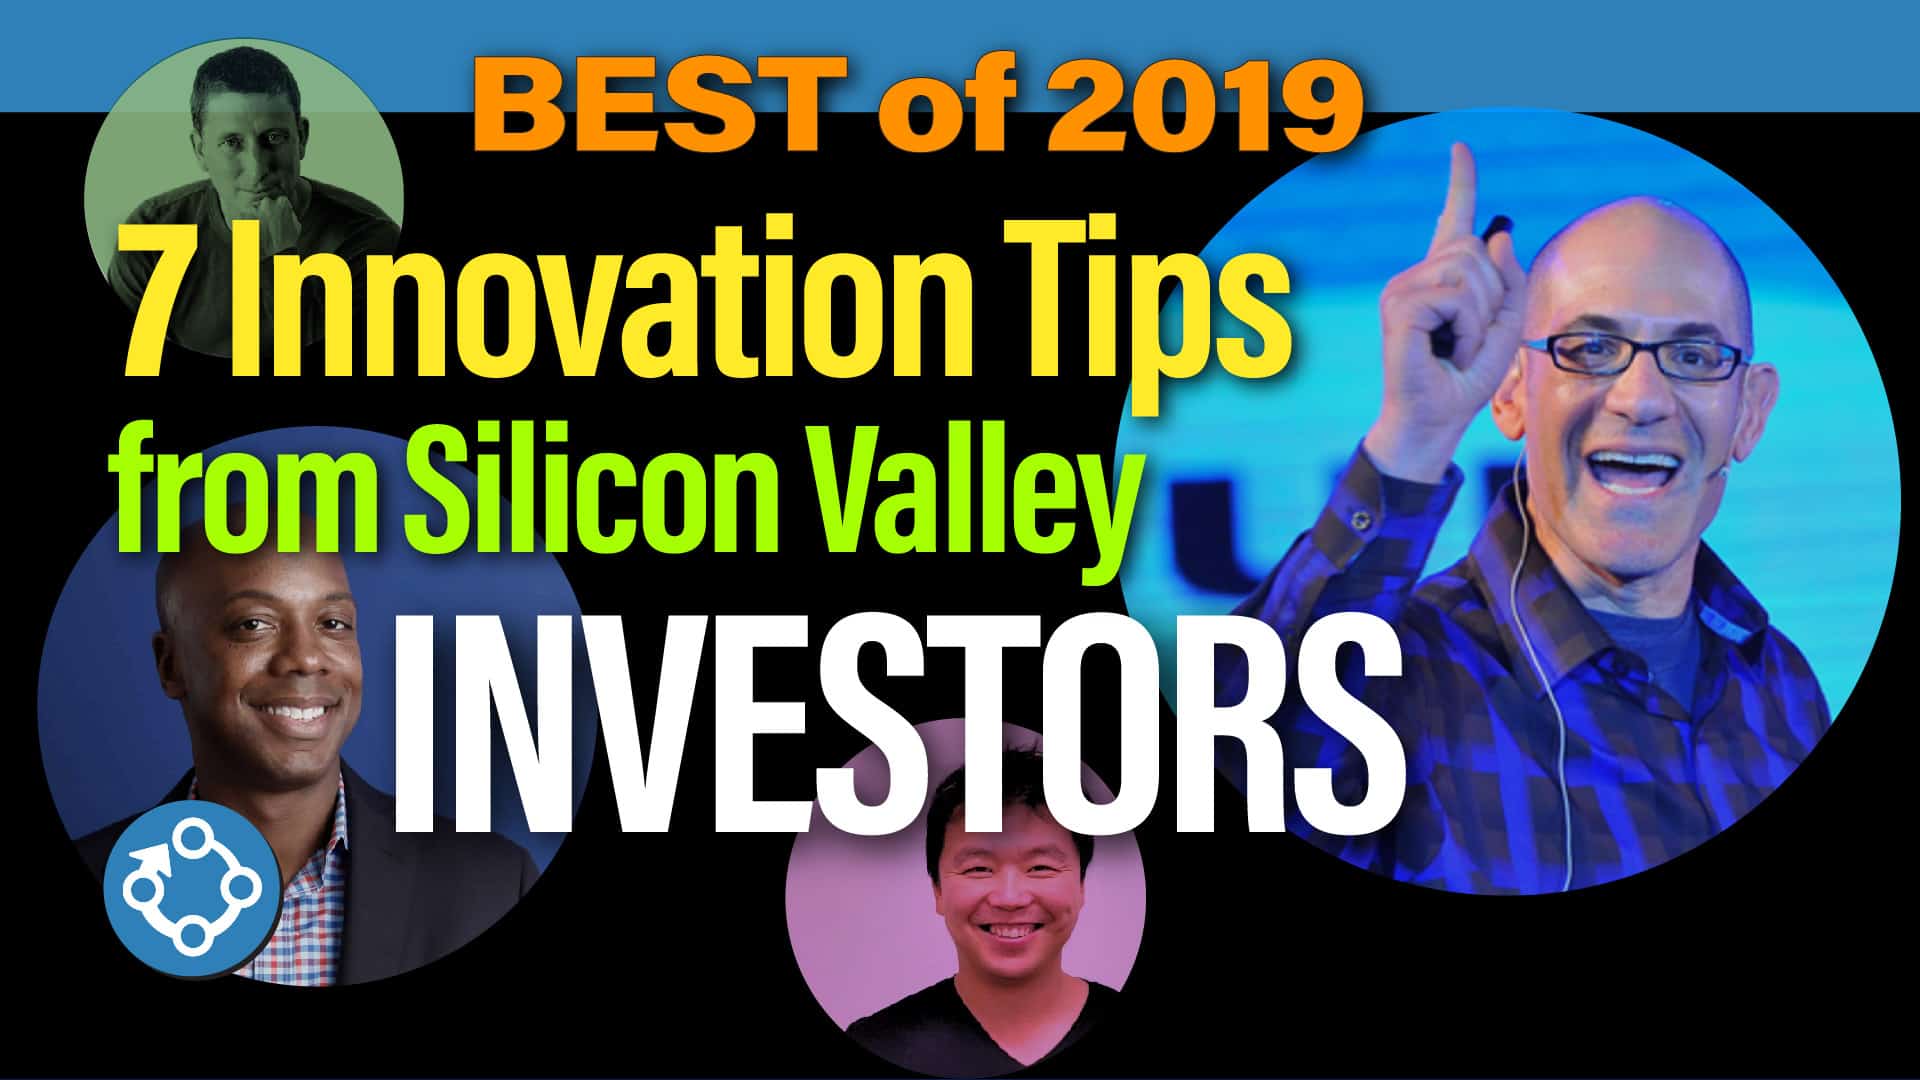 yt52-innovation-investors-thumbnail-01